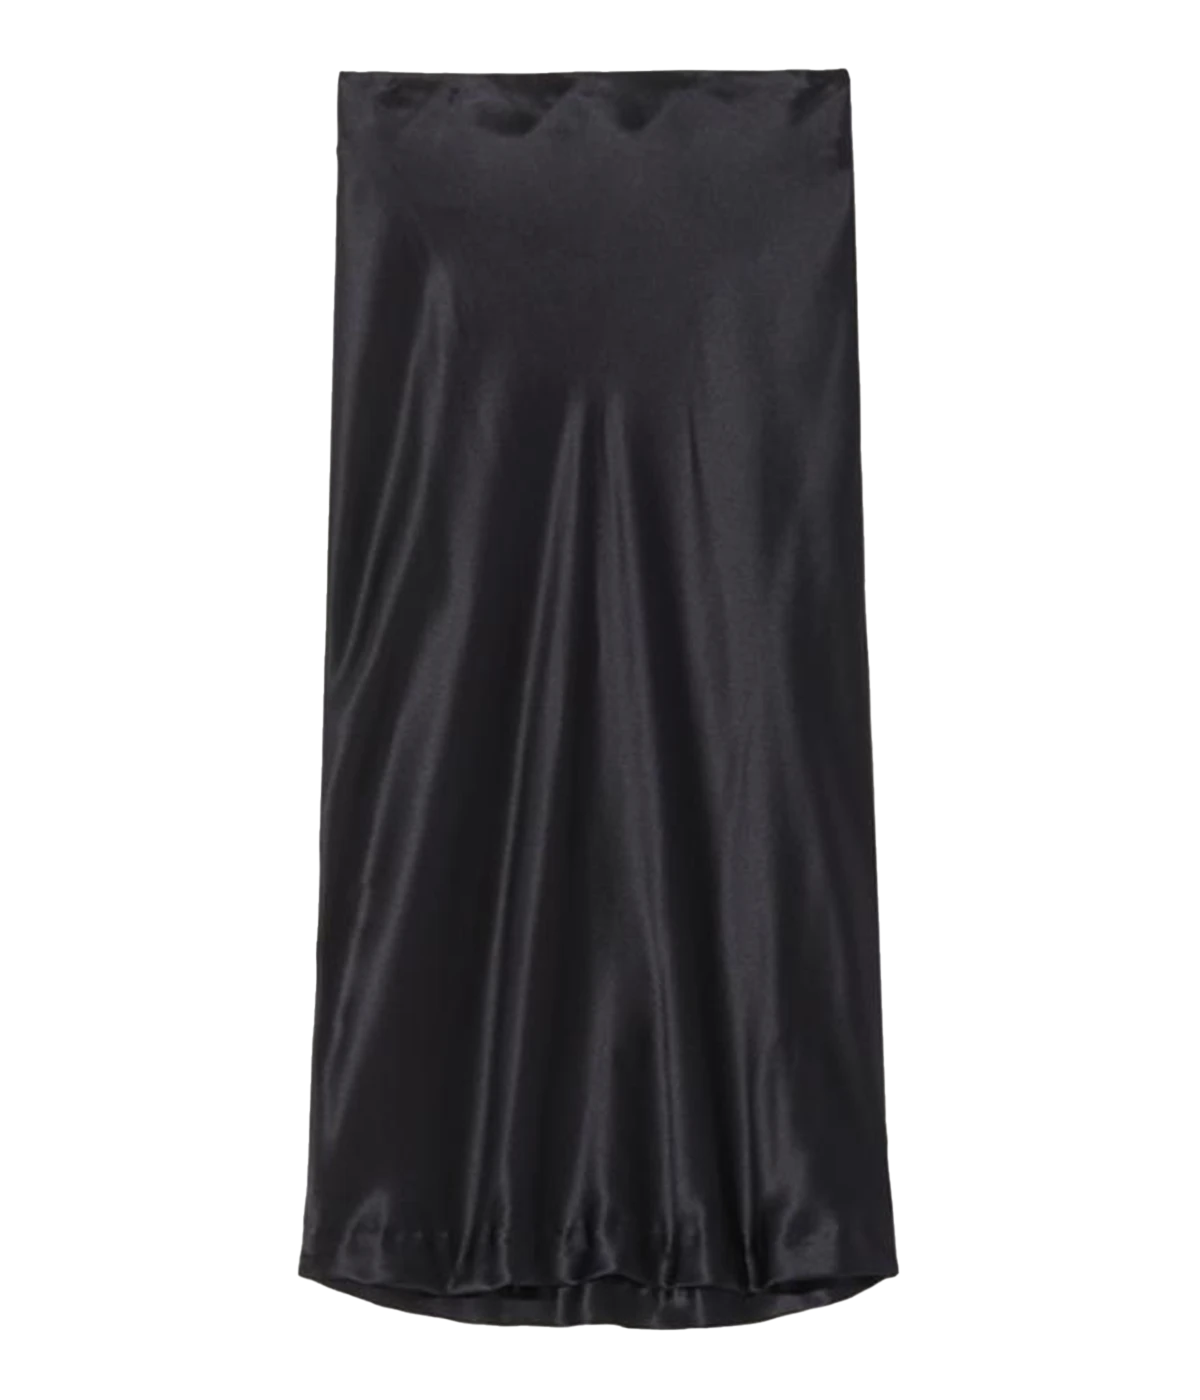 Rosine Skirt in Black